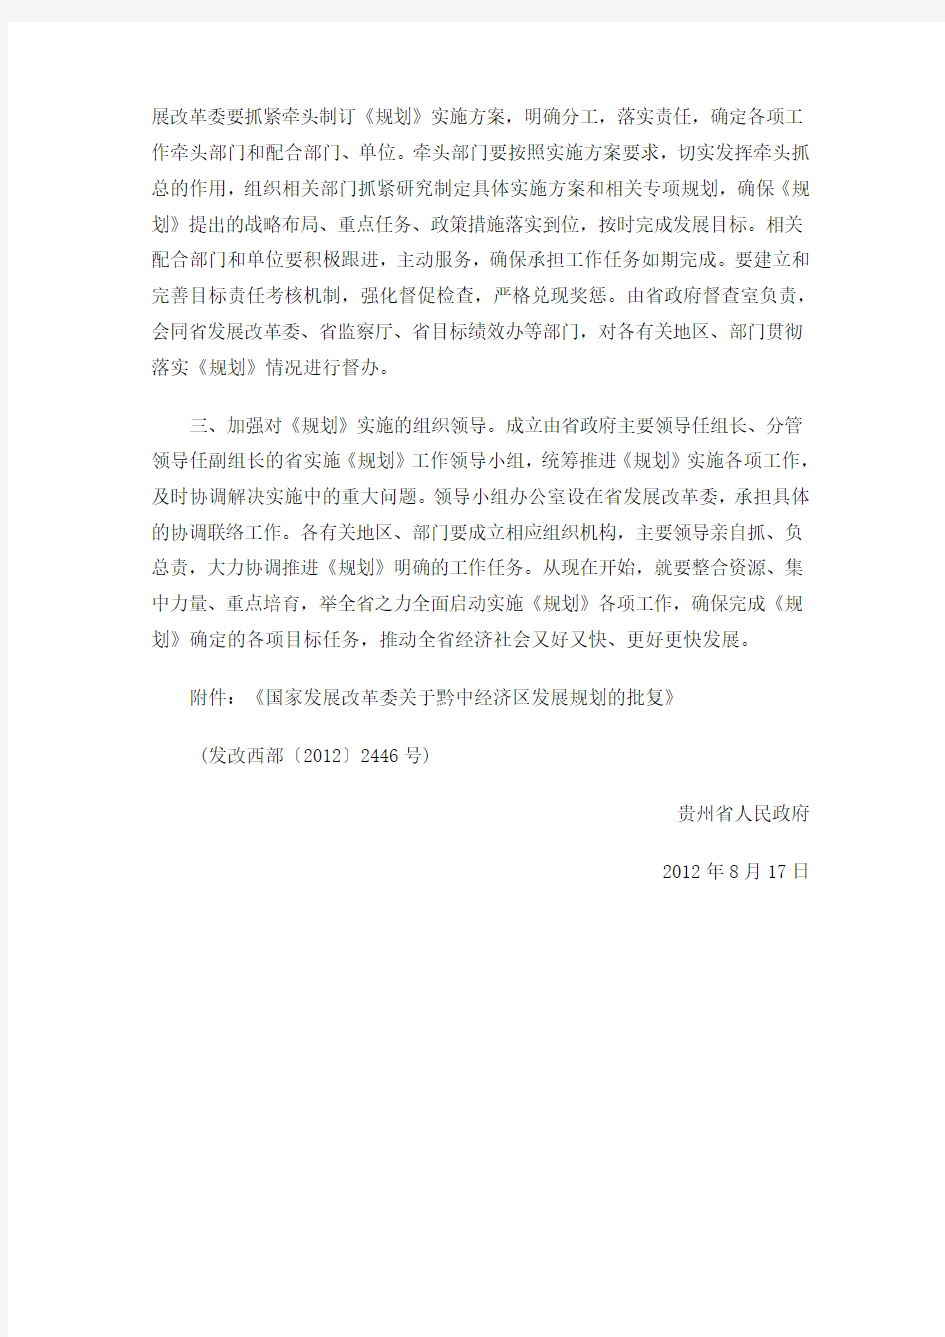 贵州省人民政府关于印发黔中经济区的通知